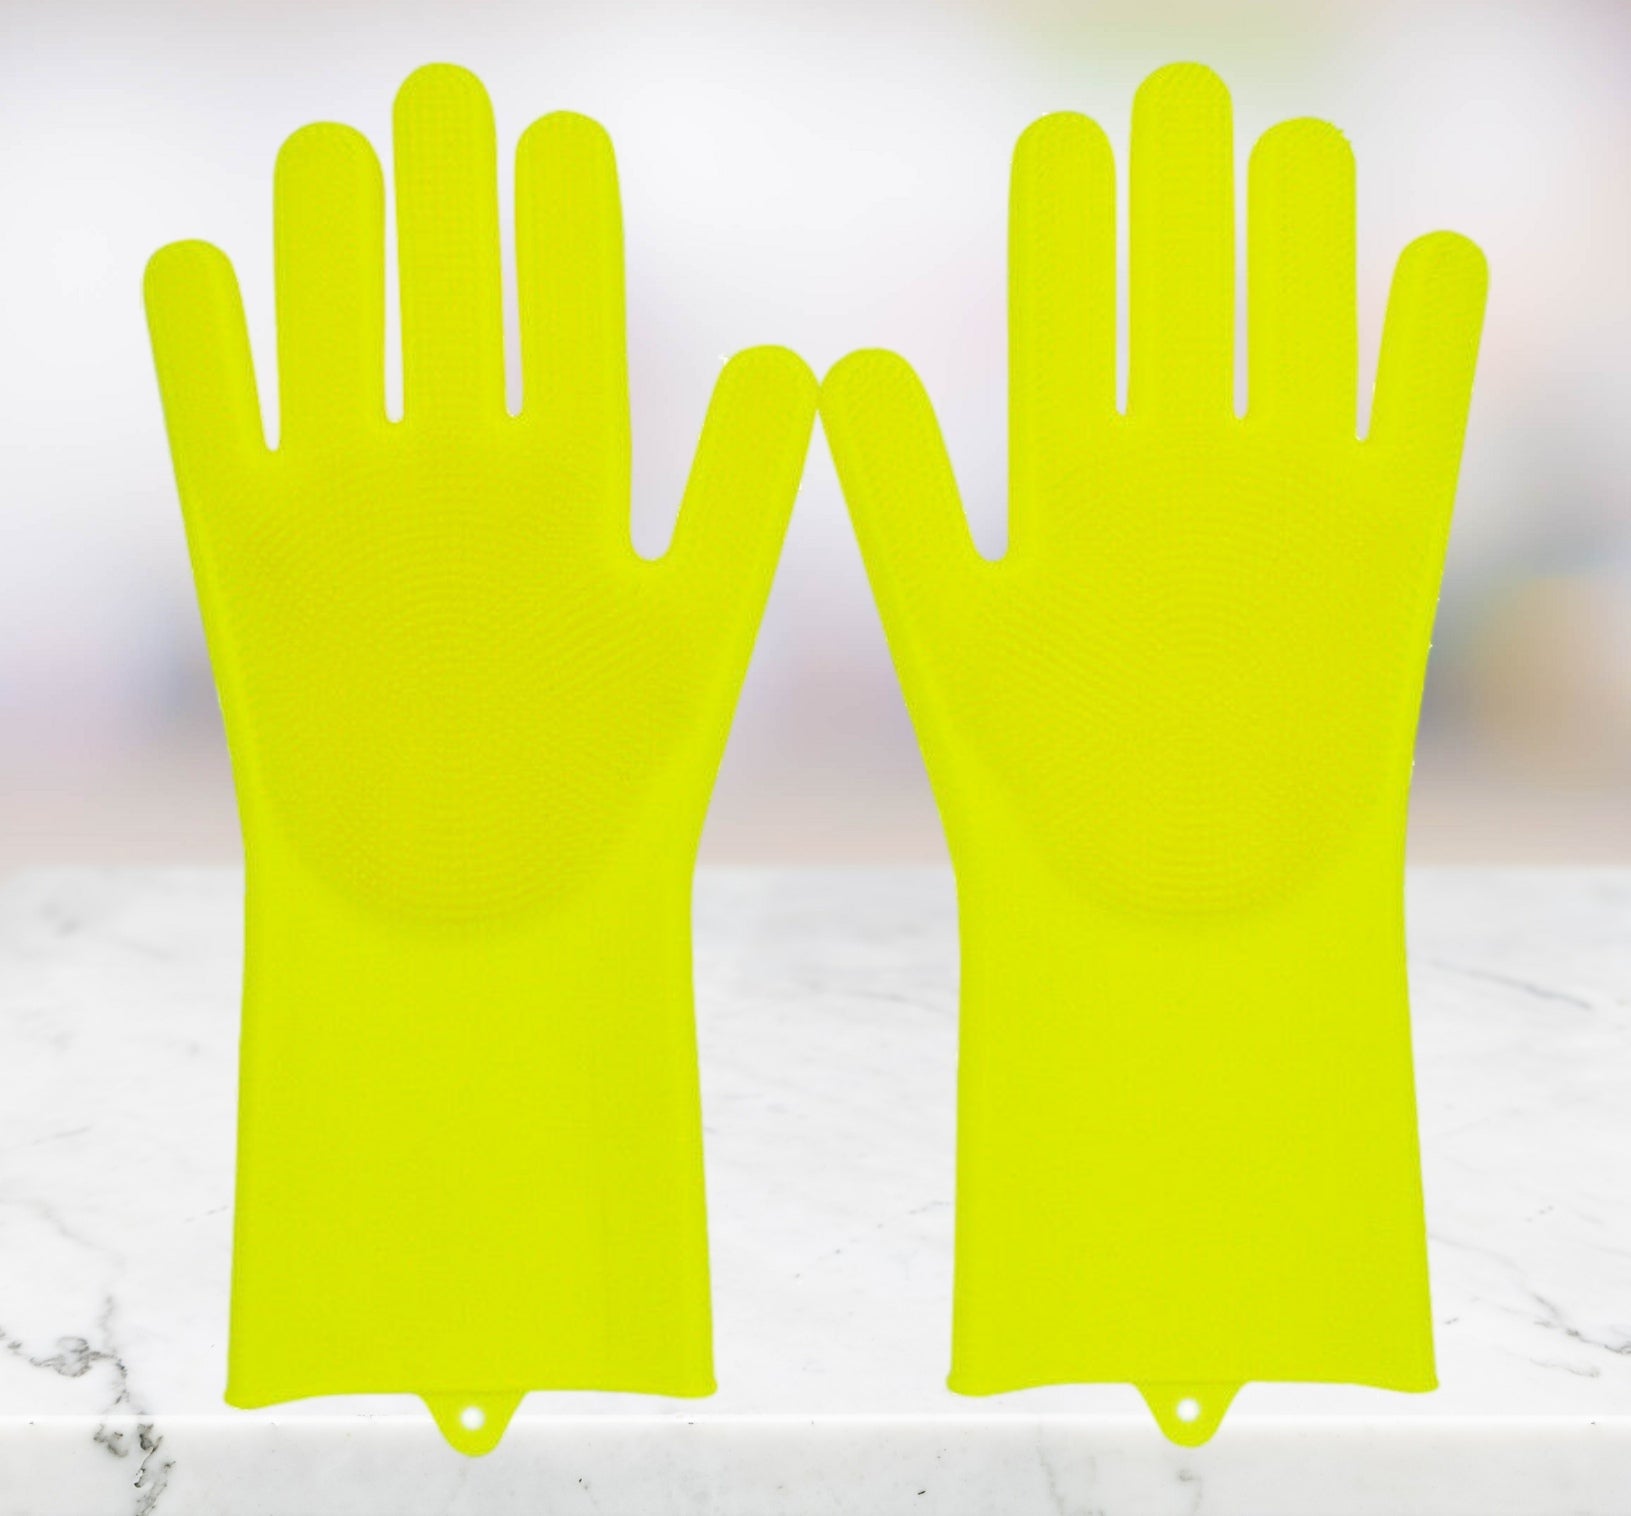 Magic Silicone Scrubbing Gloves